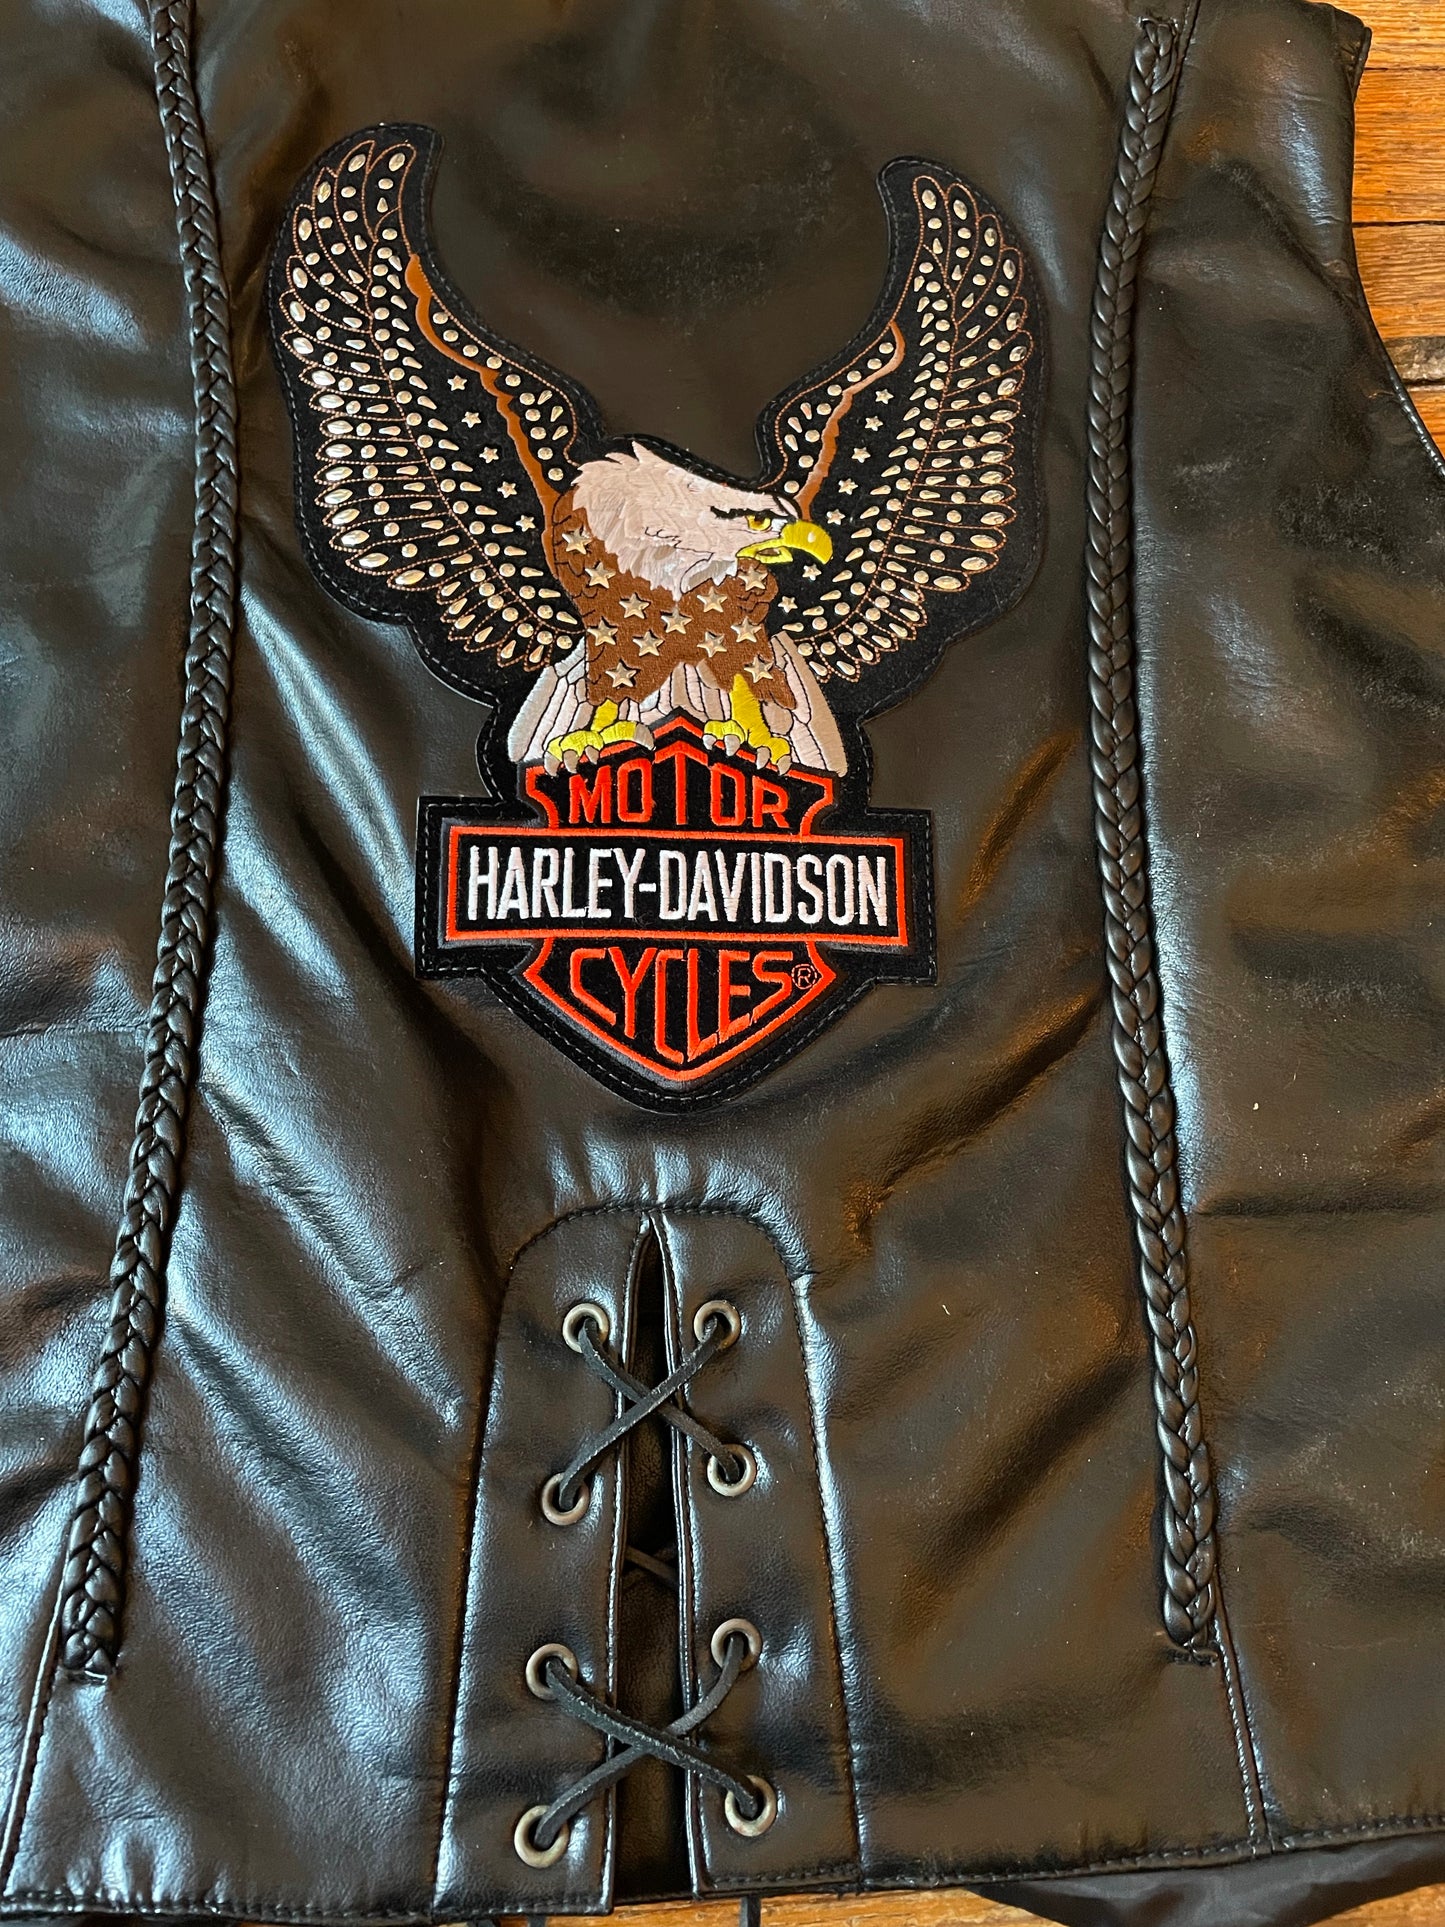 NWT Harley-Davidson Black Leather Biker Vest